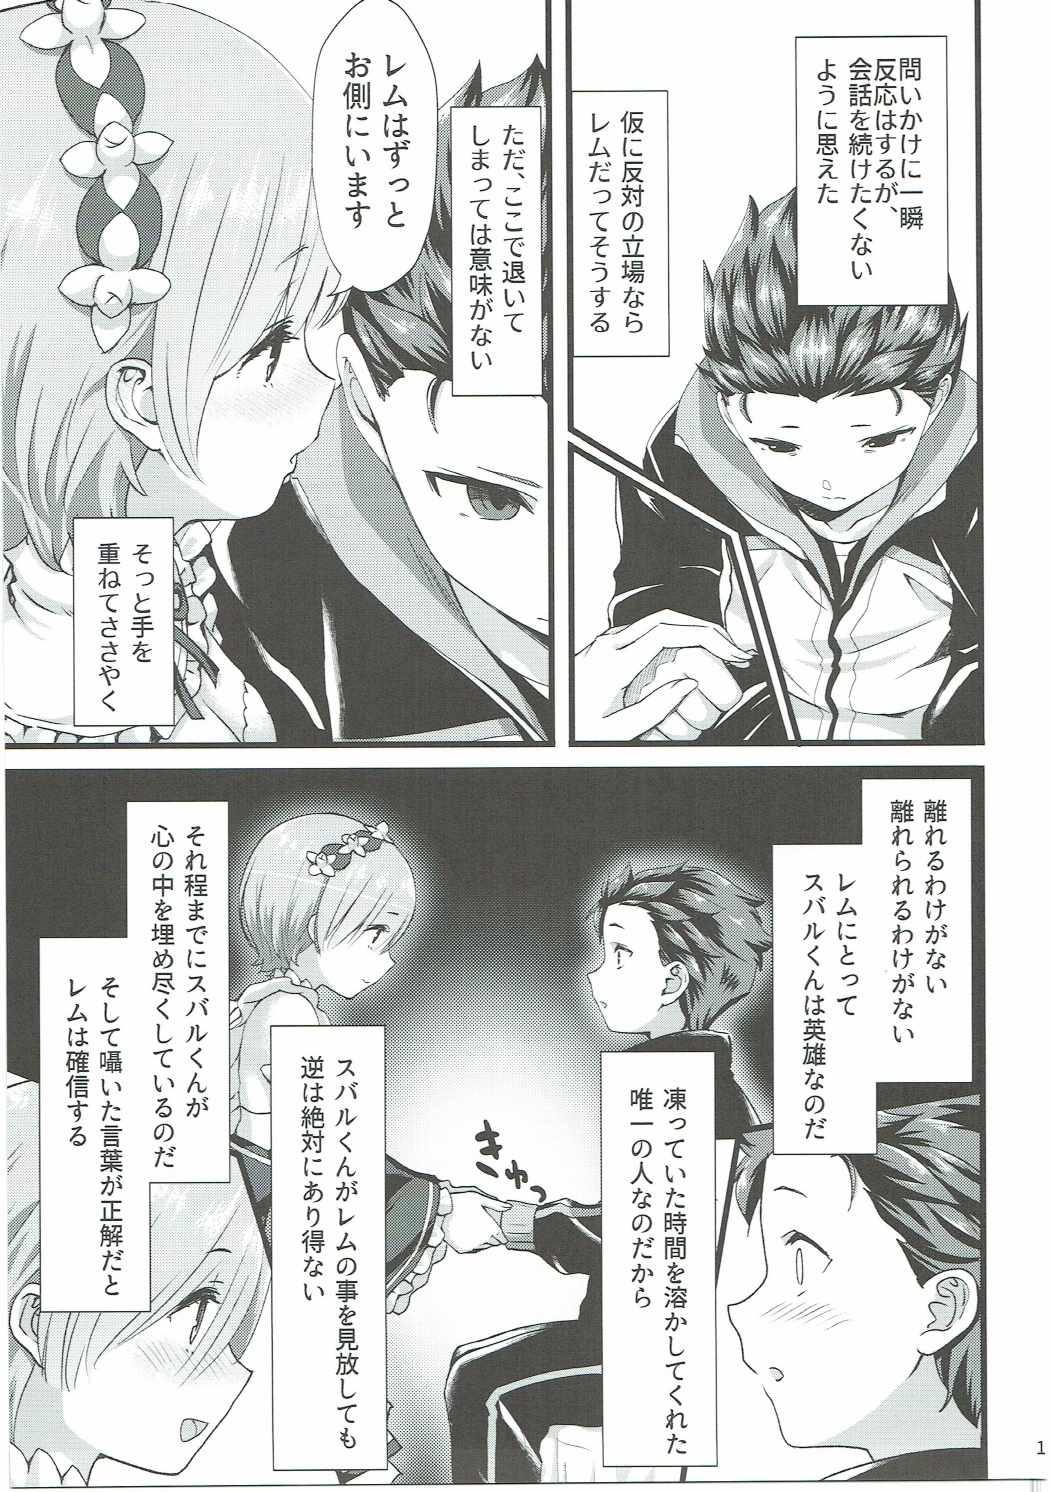 Analfuck Oni no Shoujo - Re zero kara hajimeru isekai seikatsu Mujer - Page 10